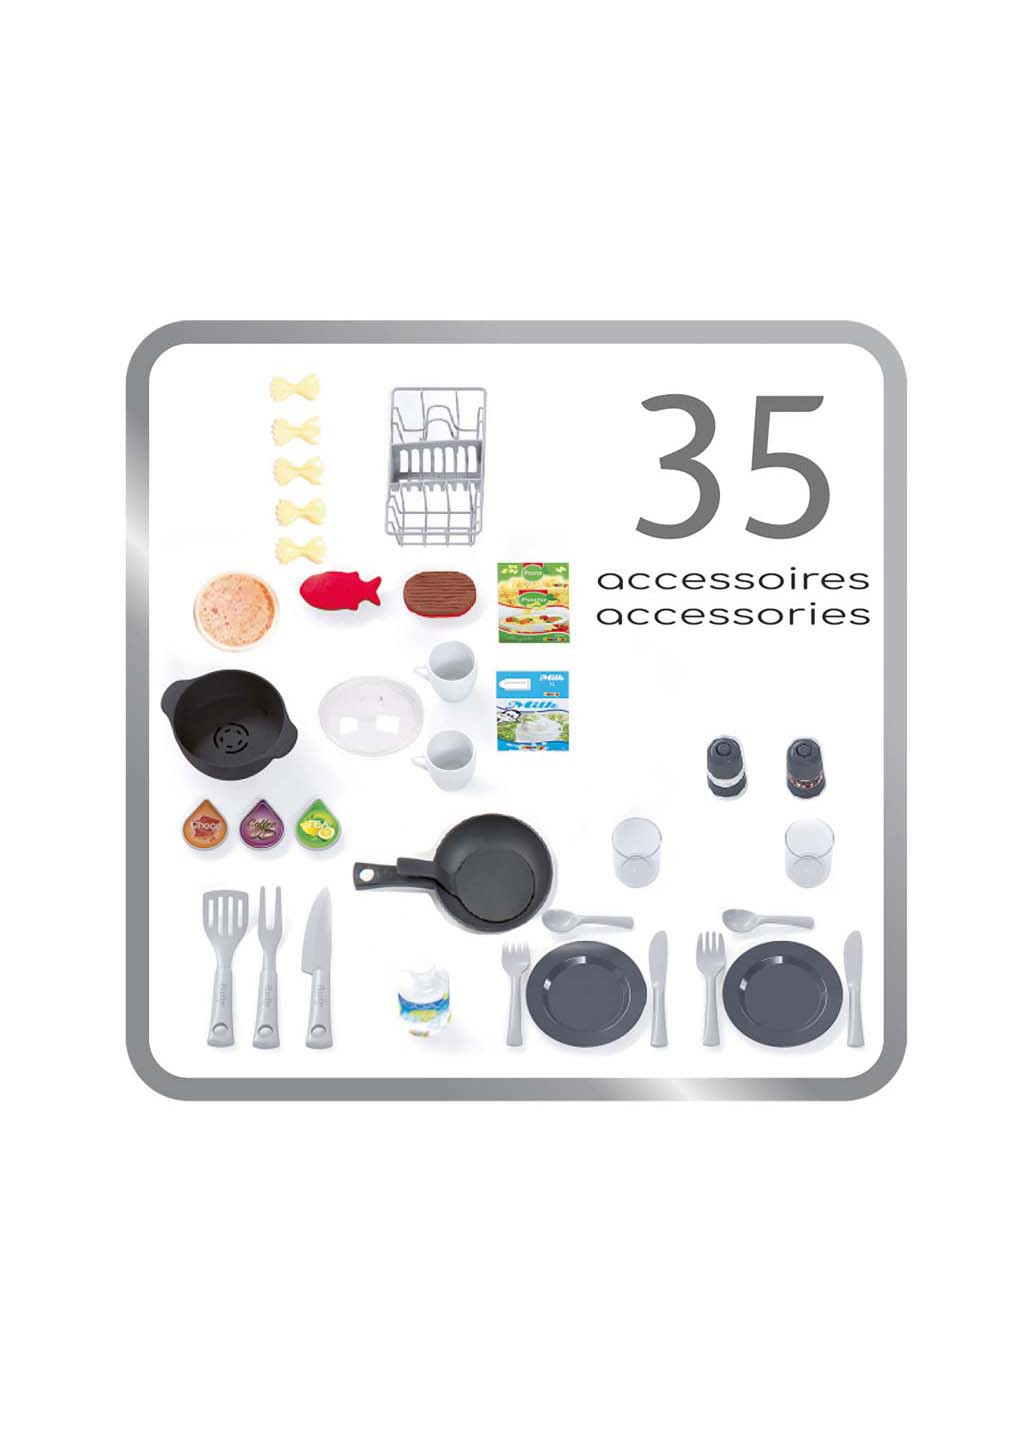 Набор детская кухня TECH Edition 35 аксессуаров Smoby (271537680)